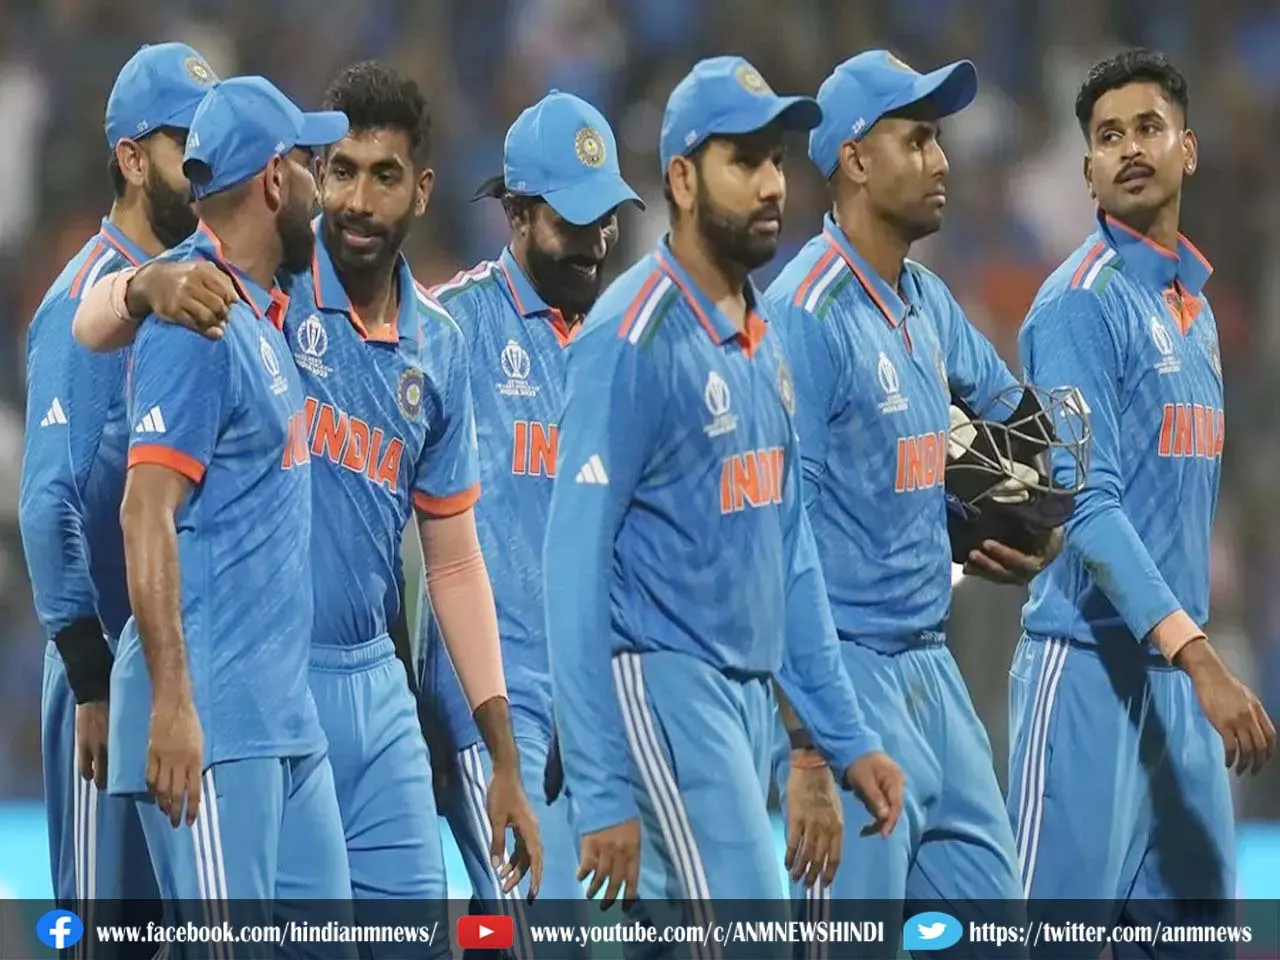 हार का बदला लेने के लिए उतरेगी टीम इंडिया